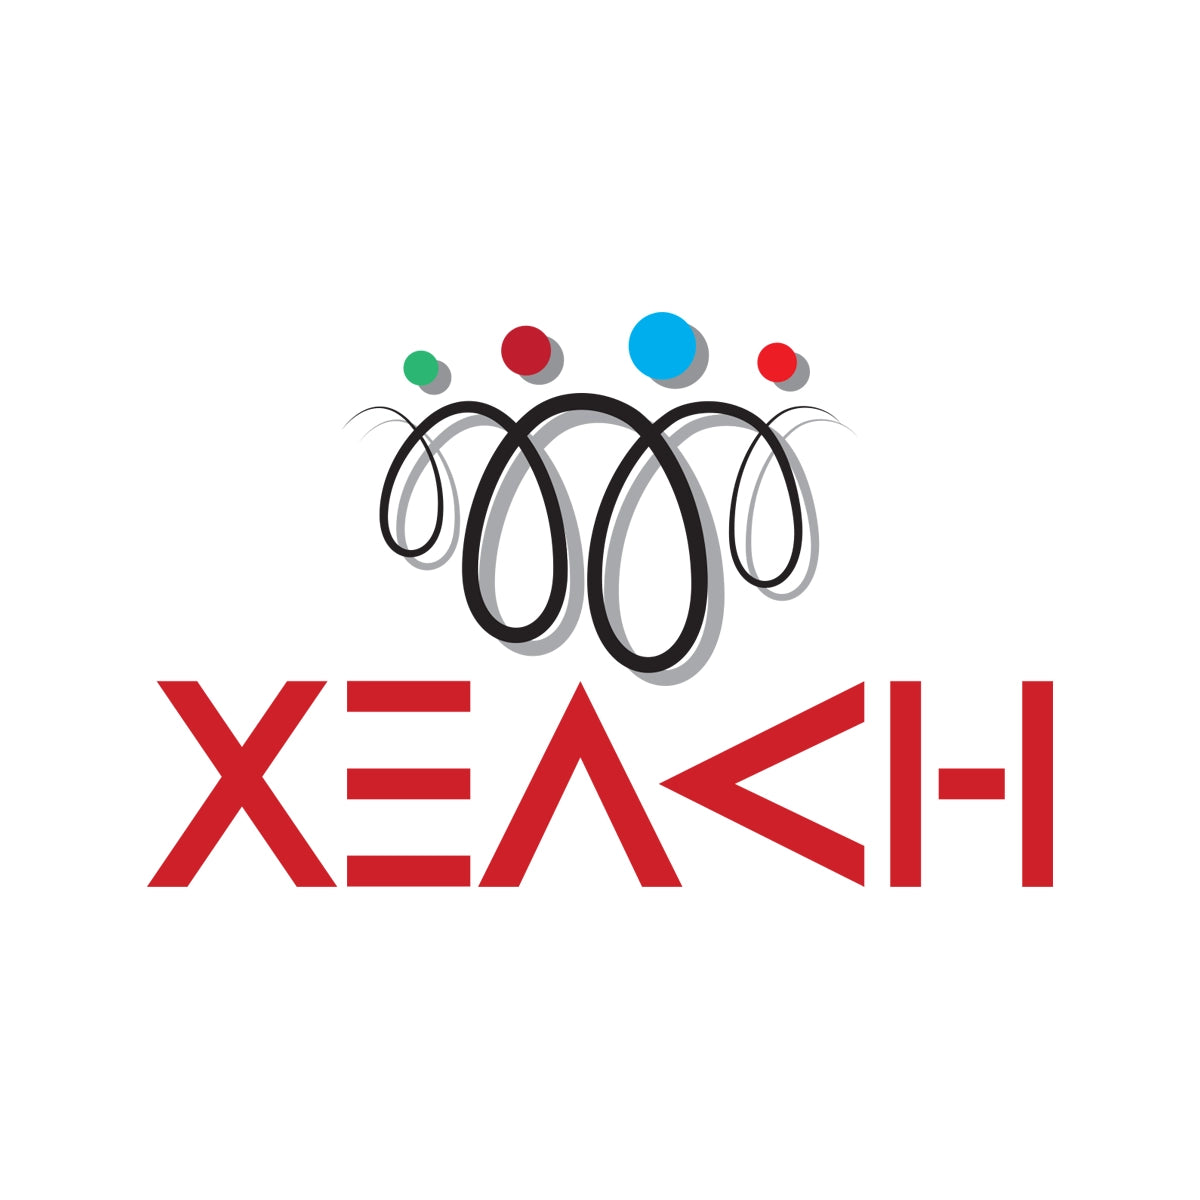 xeach.com